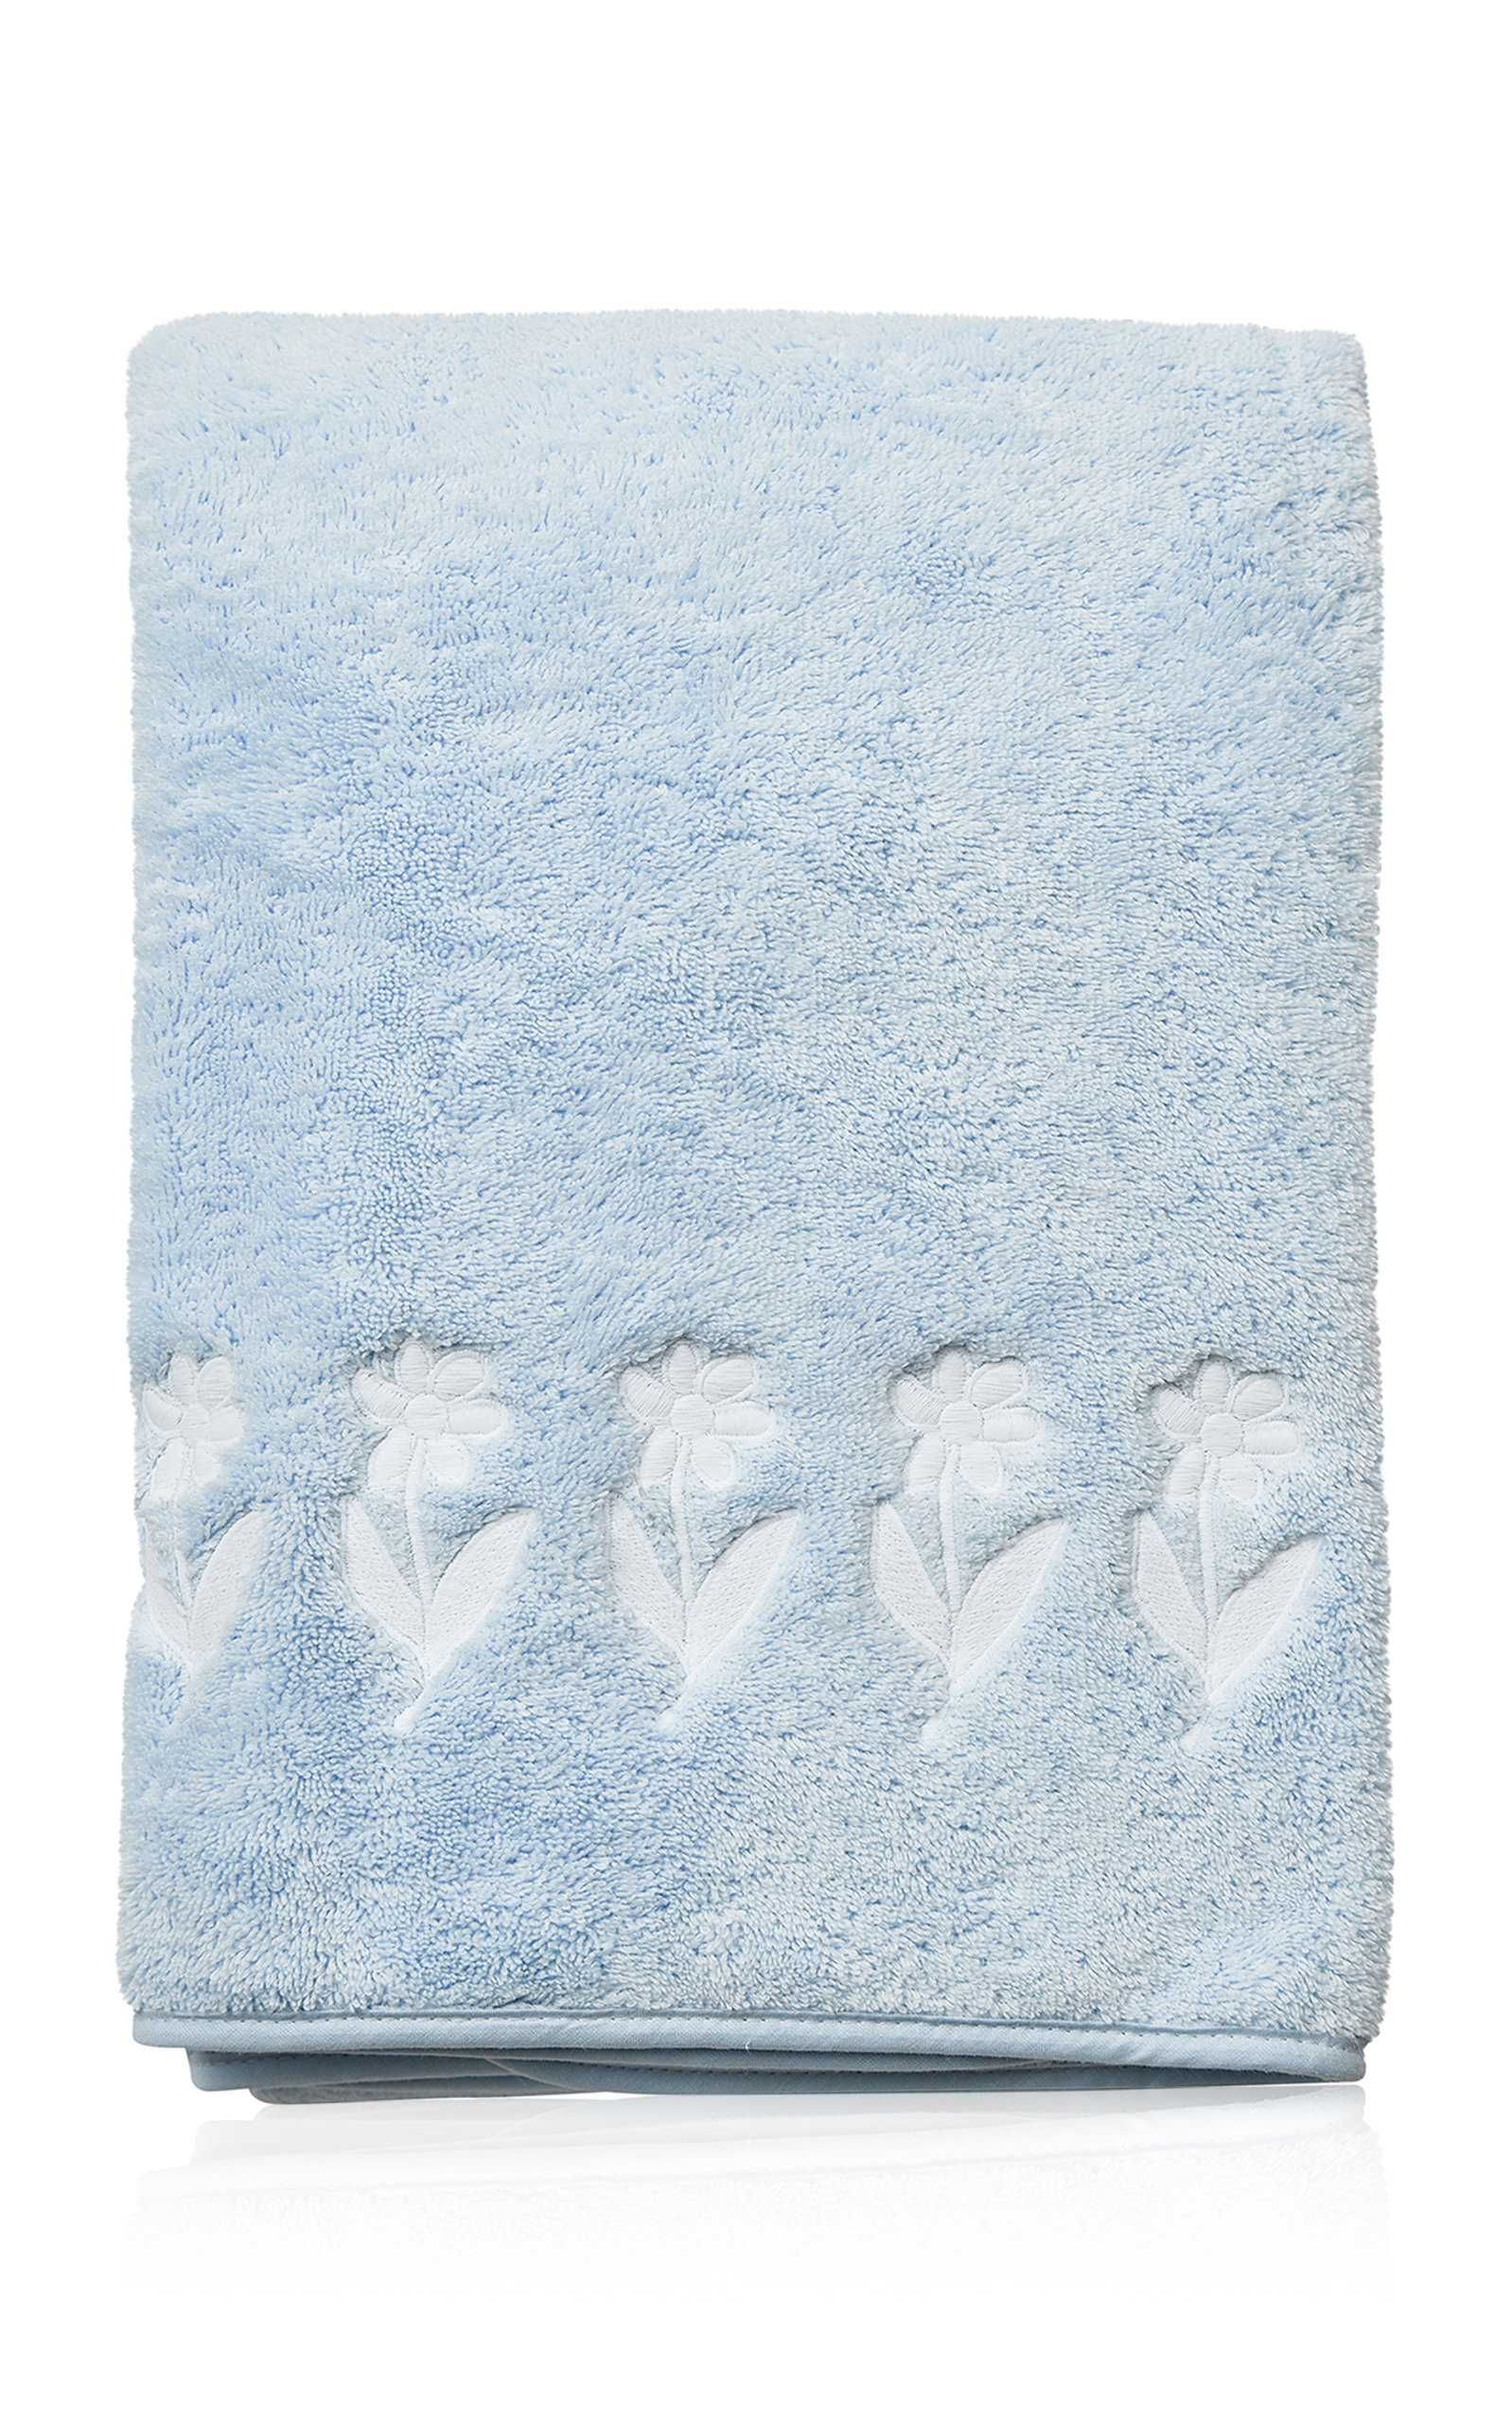 Piped Edge Bath Towel | Moda Operandi (Global)